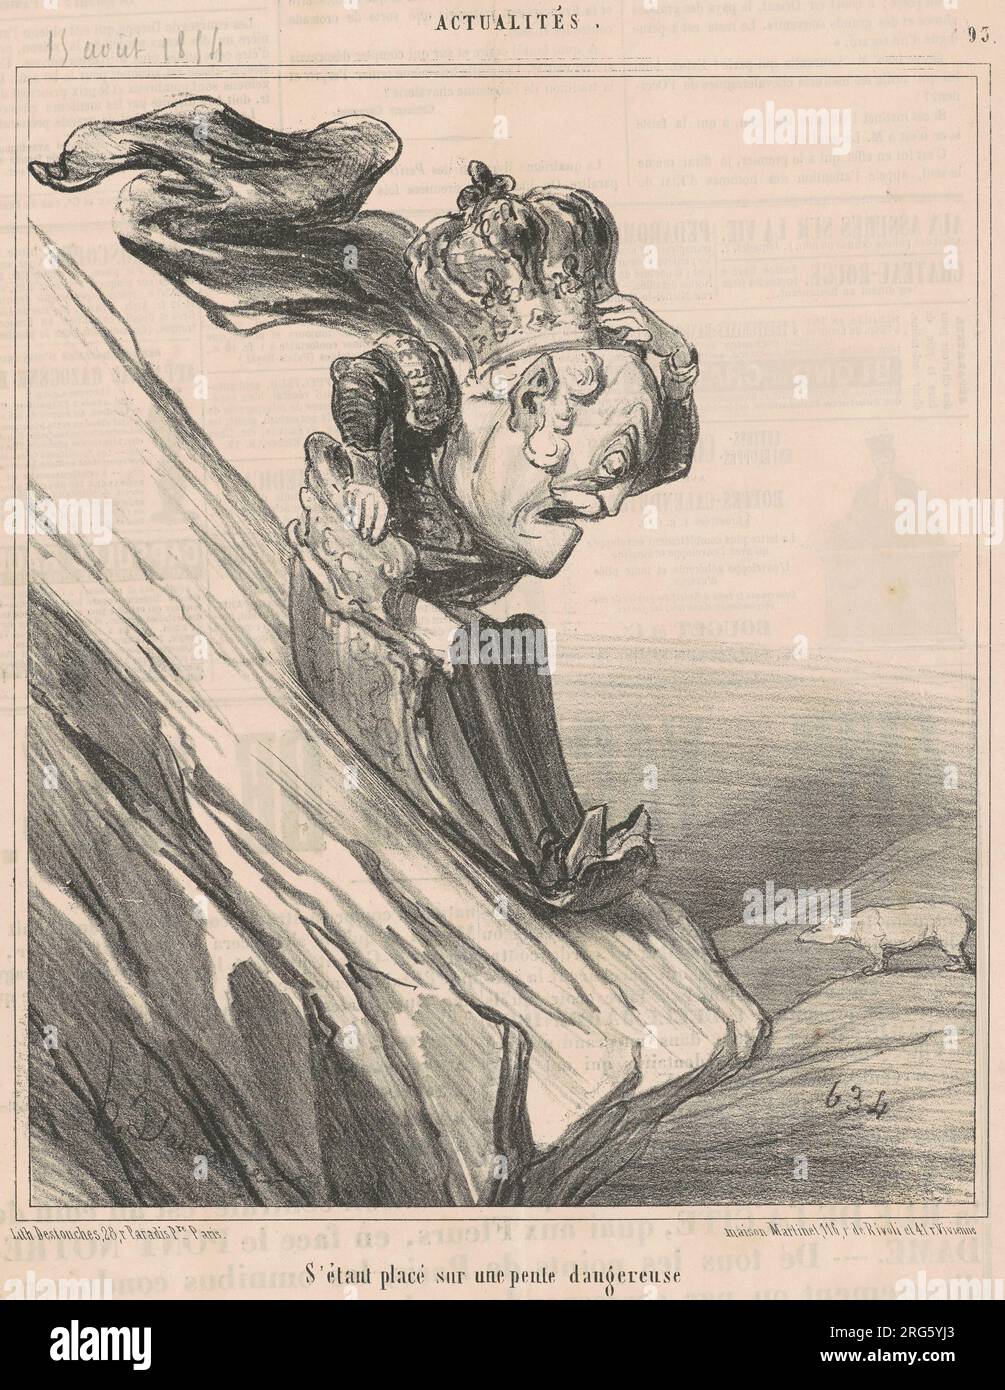 S'étant placé sur une pente dangereuse 19th century by Honoré Daumier Stock Photo